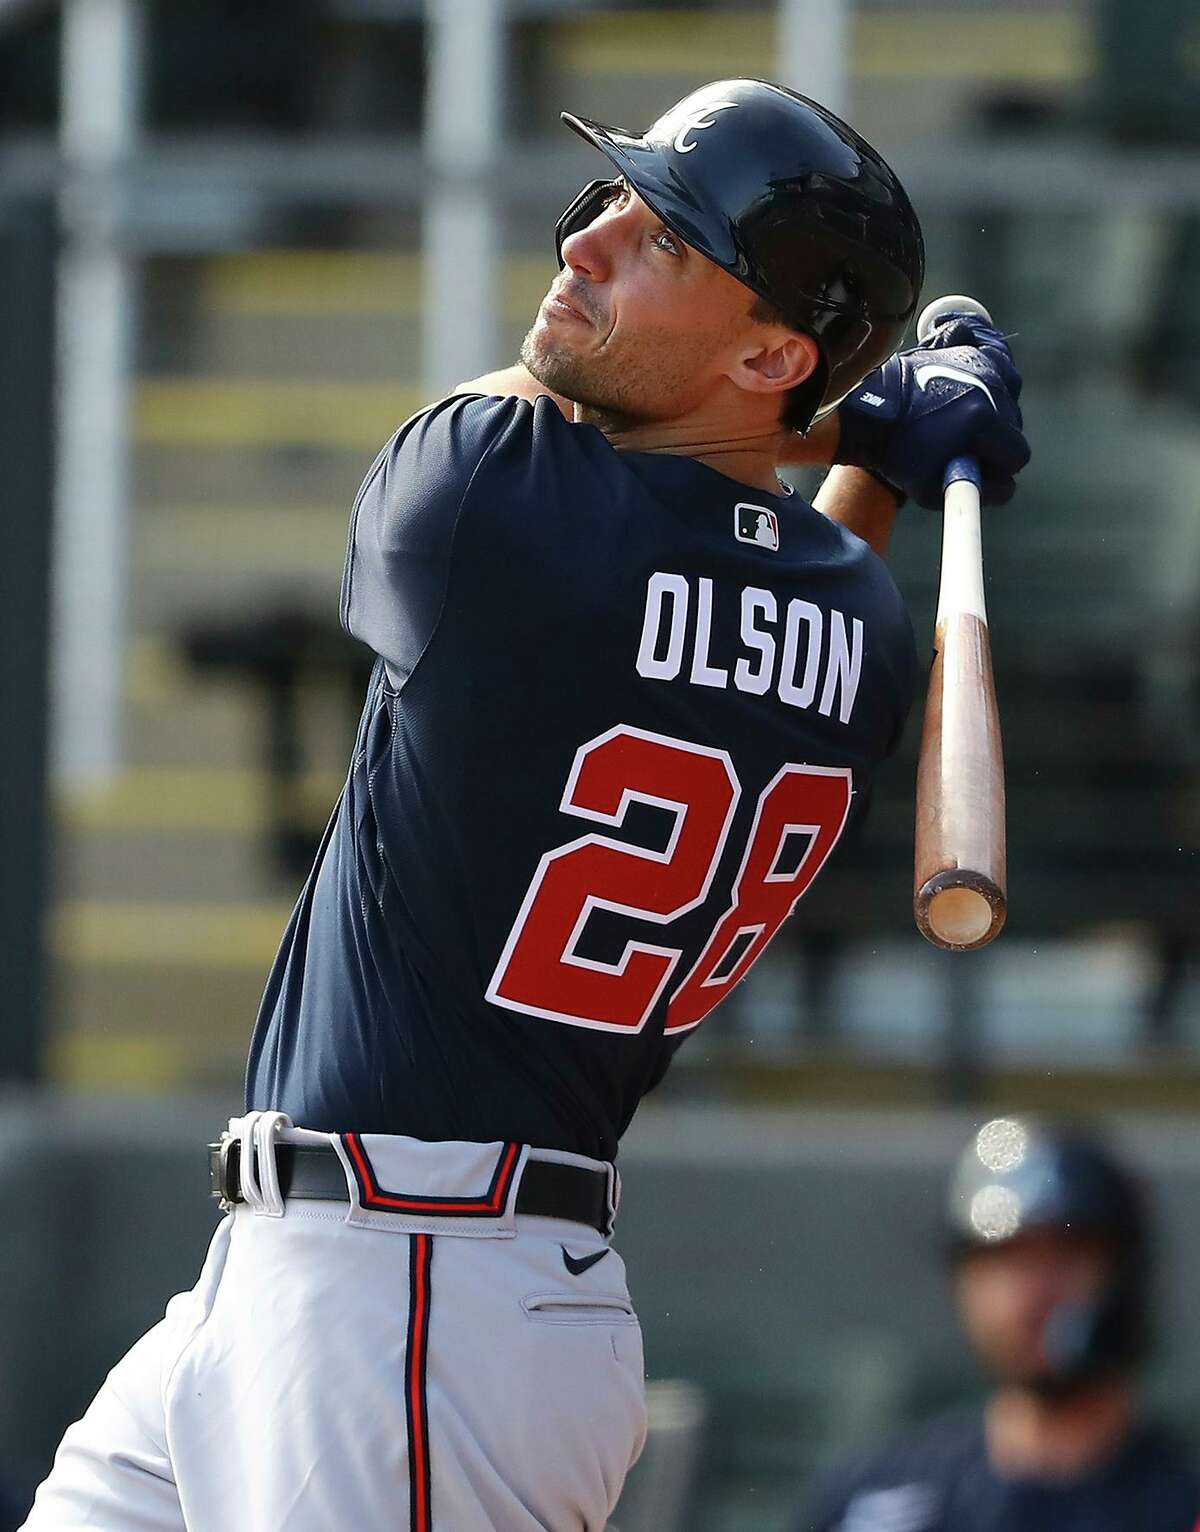 Matt Olson - Atlanta Braves First Baseman - ESPN